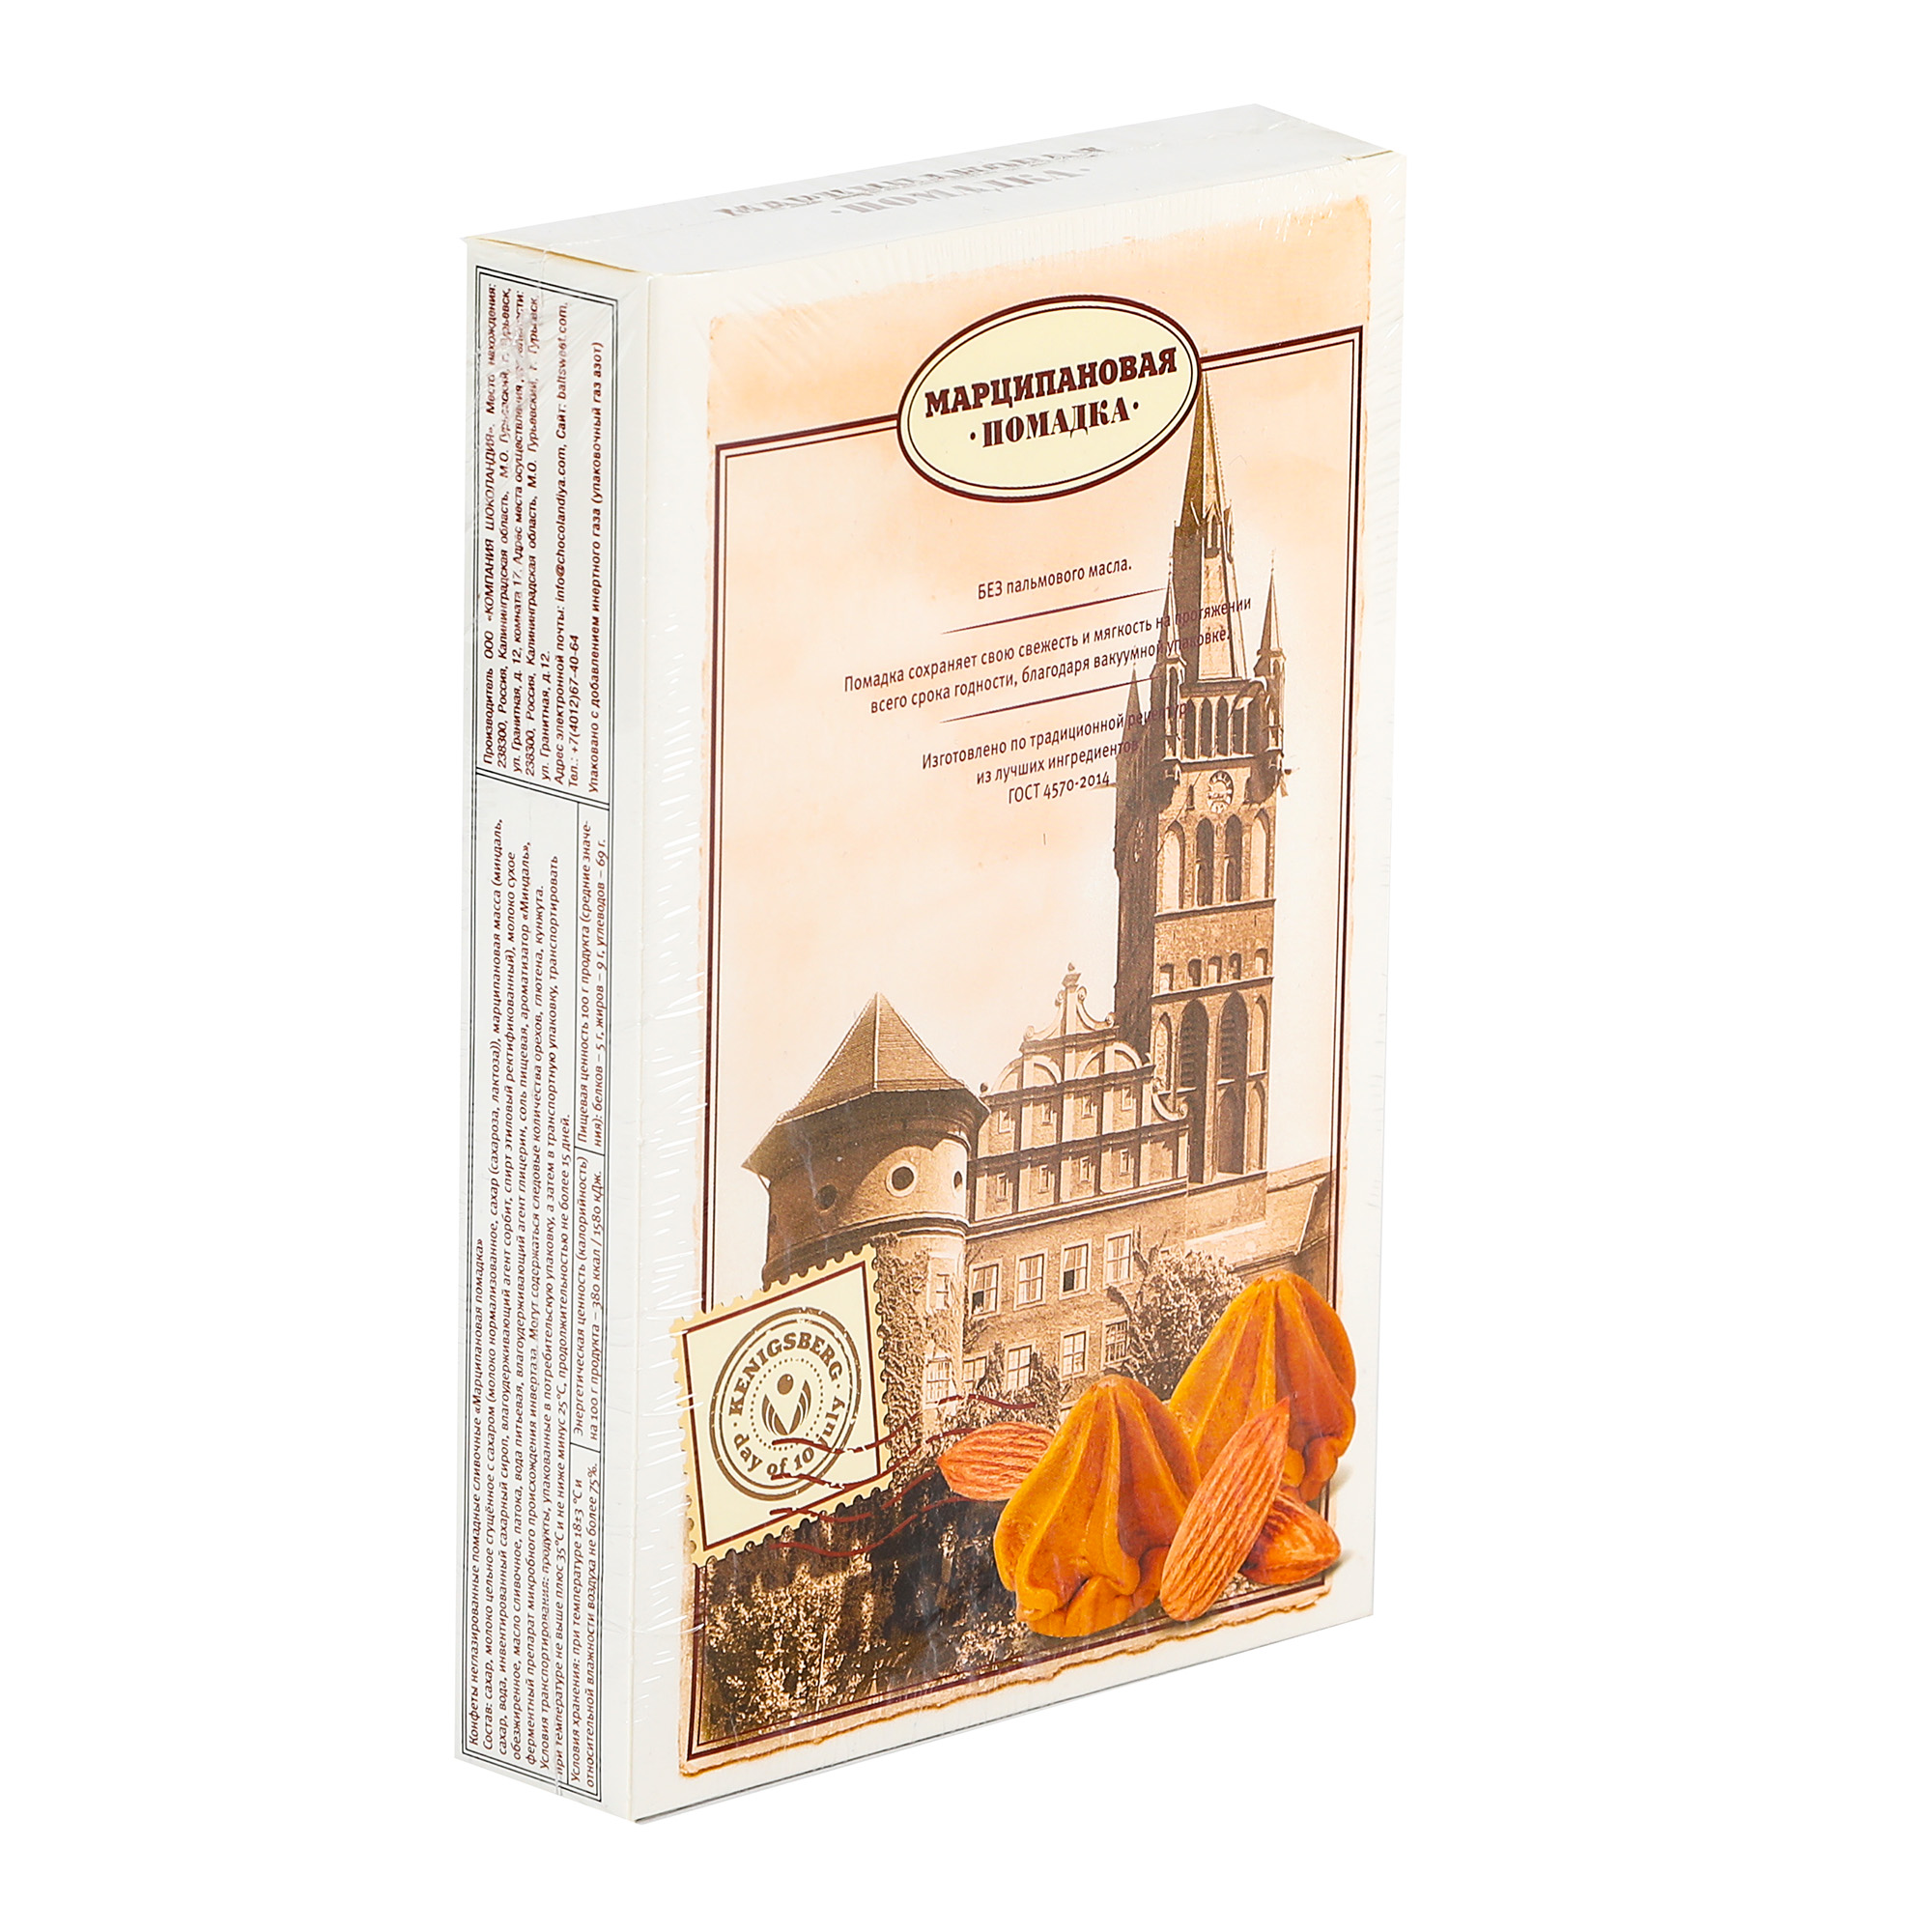 Конфеты Компания Шоколандия помадка Kenigsberg, 150 г конфеты компания шоколандия помадка сливочная 150 г